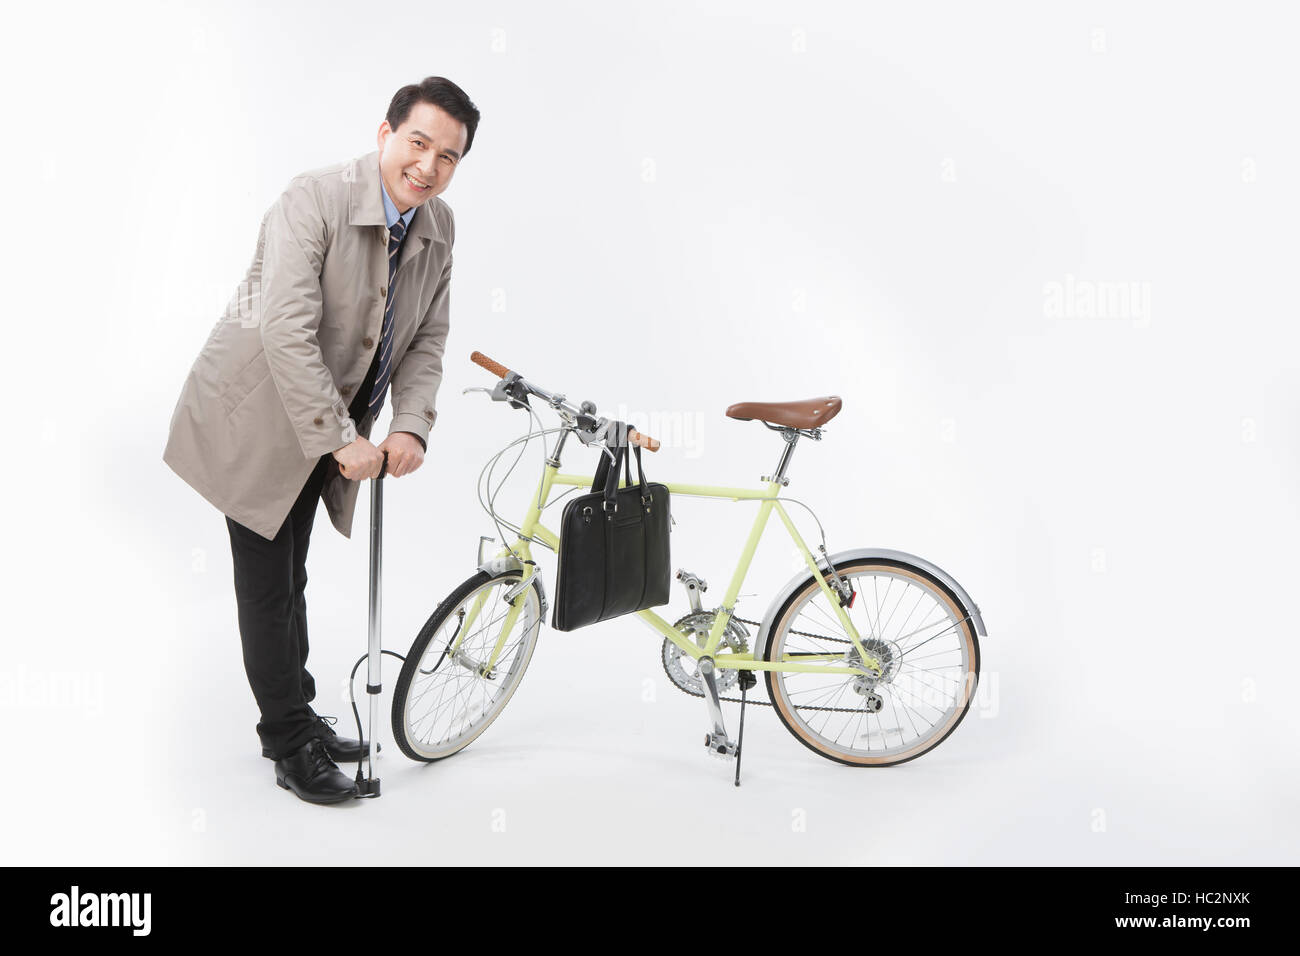 Smiling middle aged businessman en pompant son vélo Banque D'Images